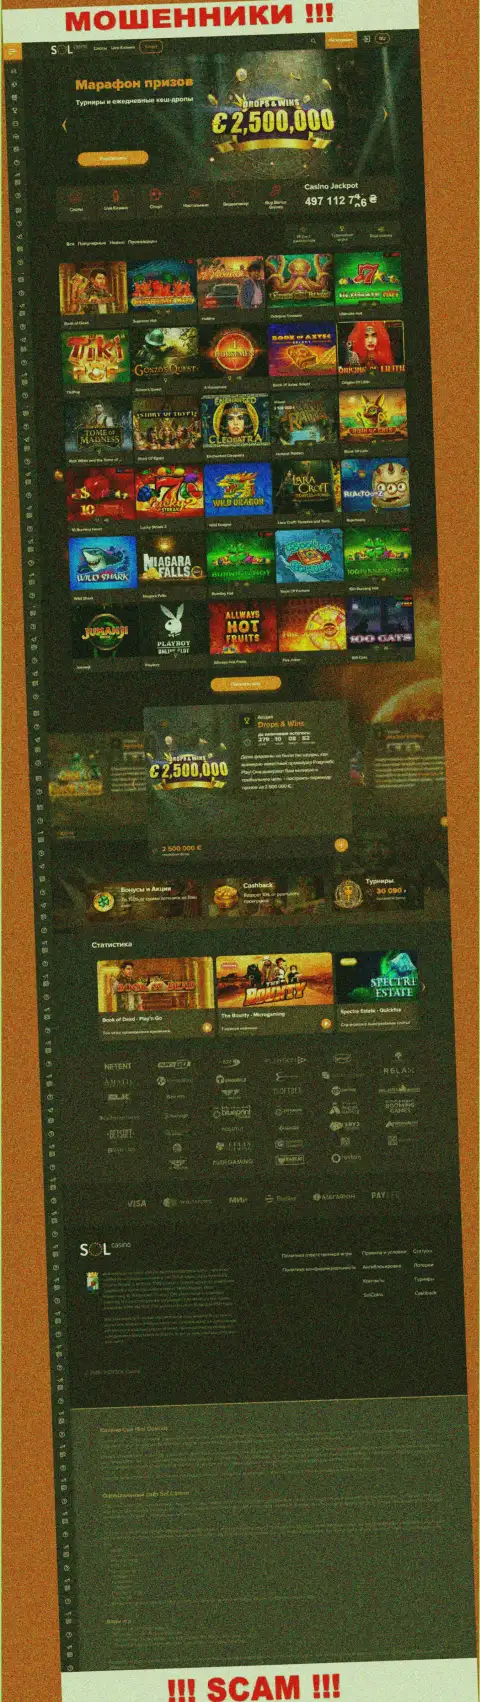 Основная страничка официального веб-портала обманщиков Sol Casino